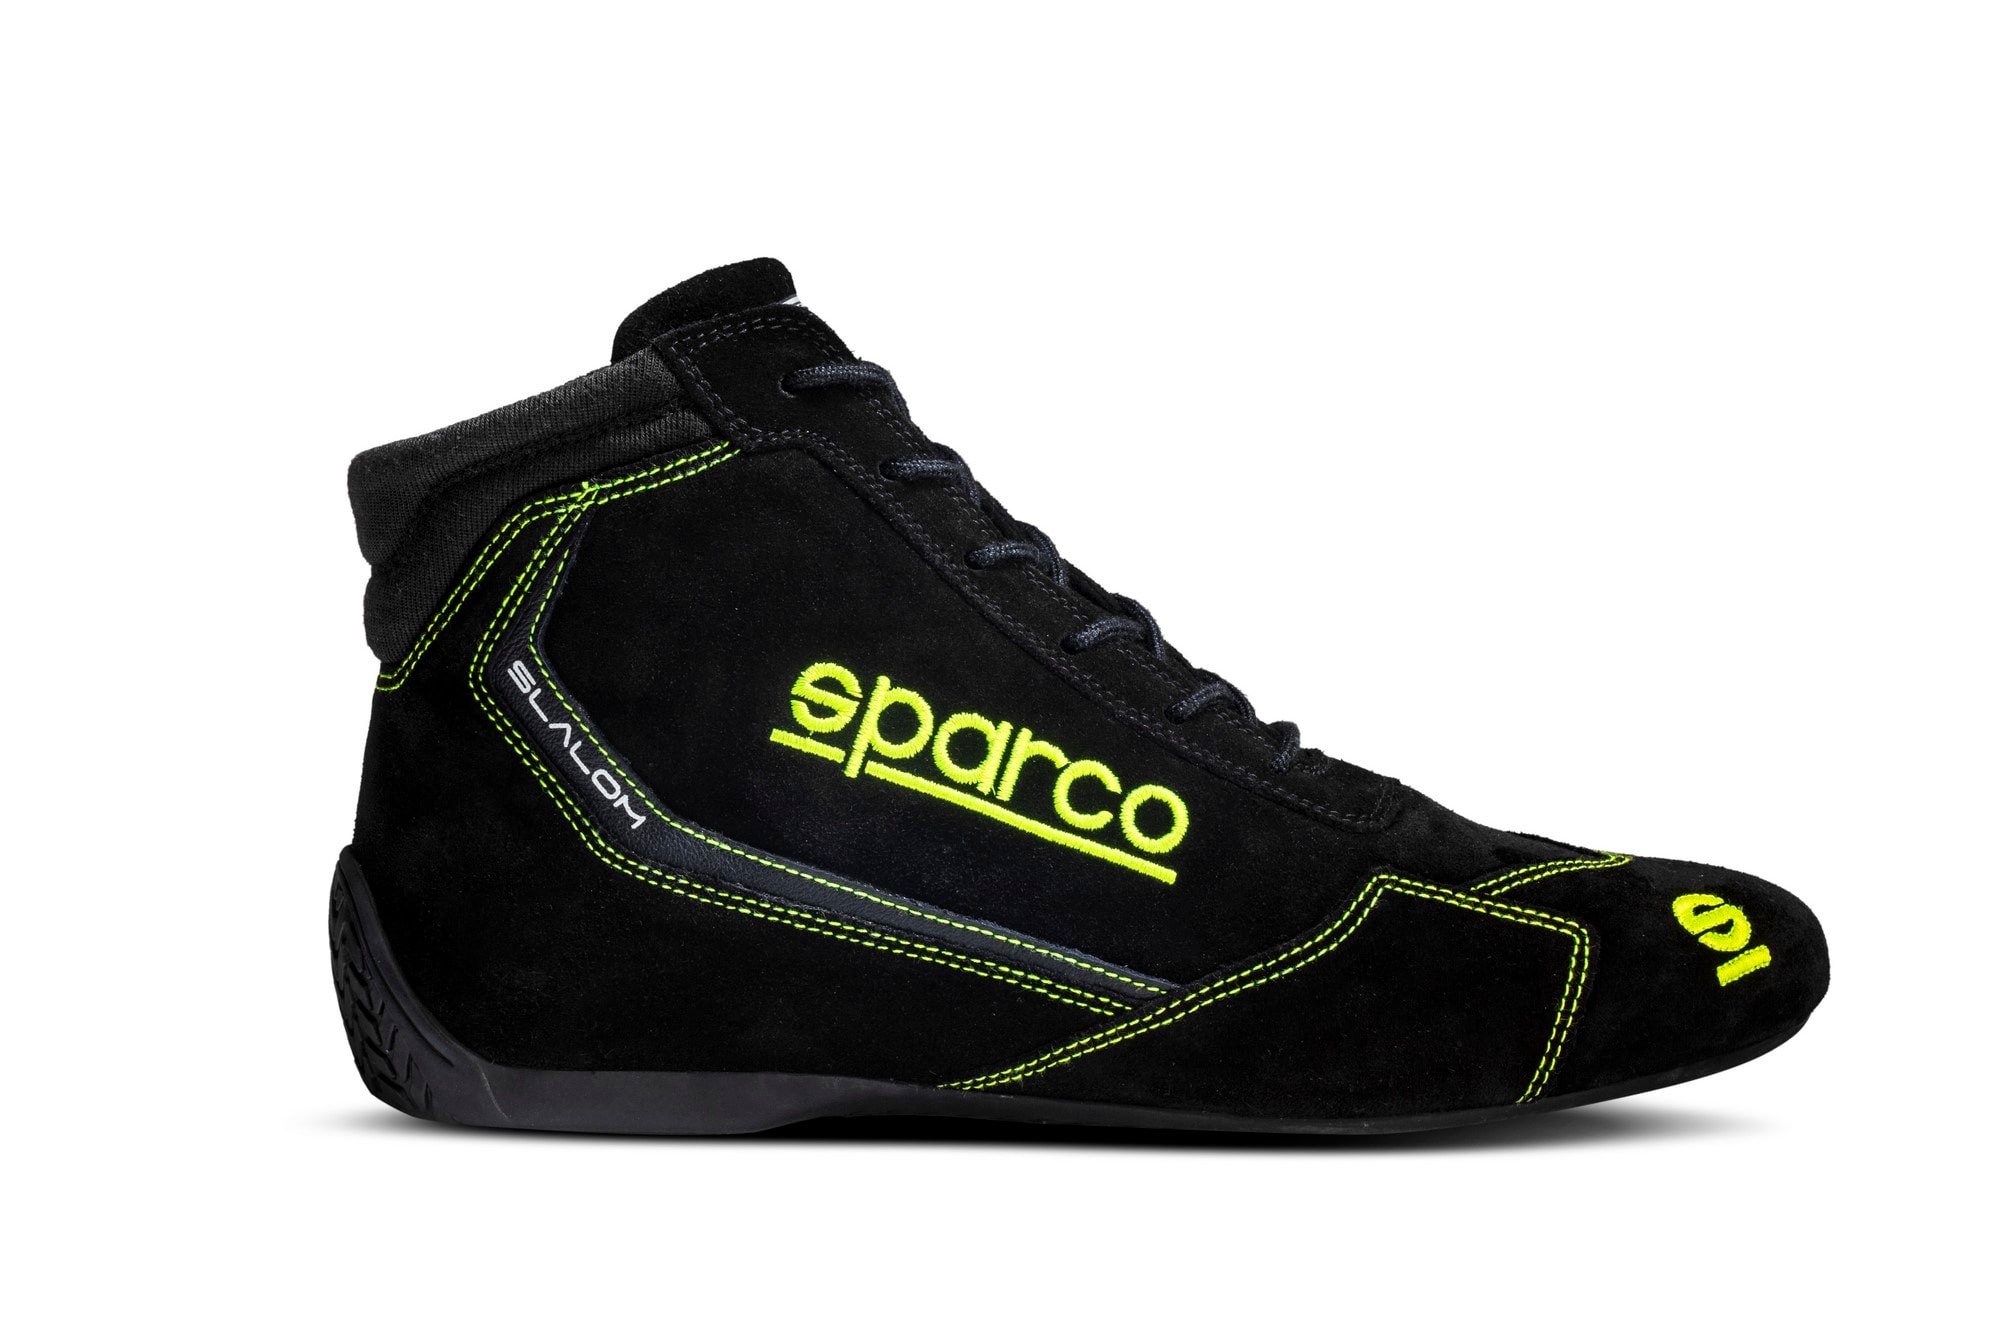 Kengät Sparco Slalom Musta/Keltainen